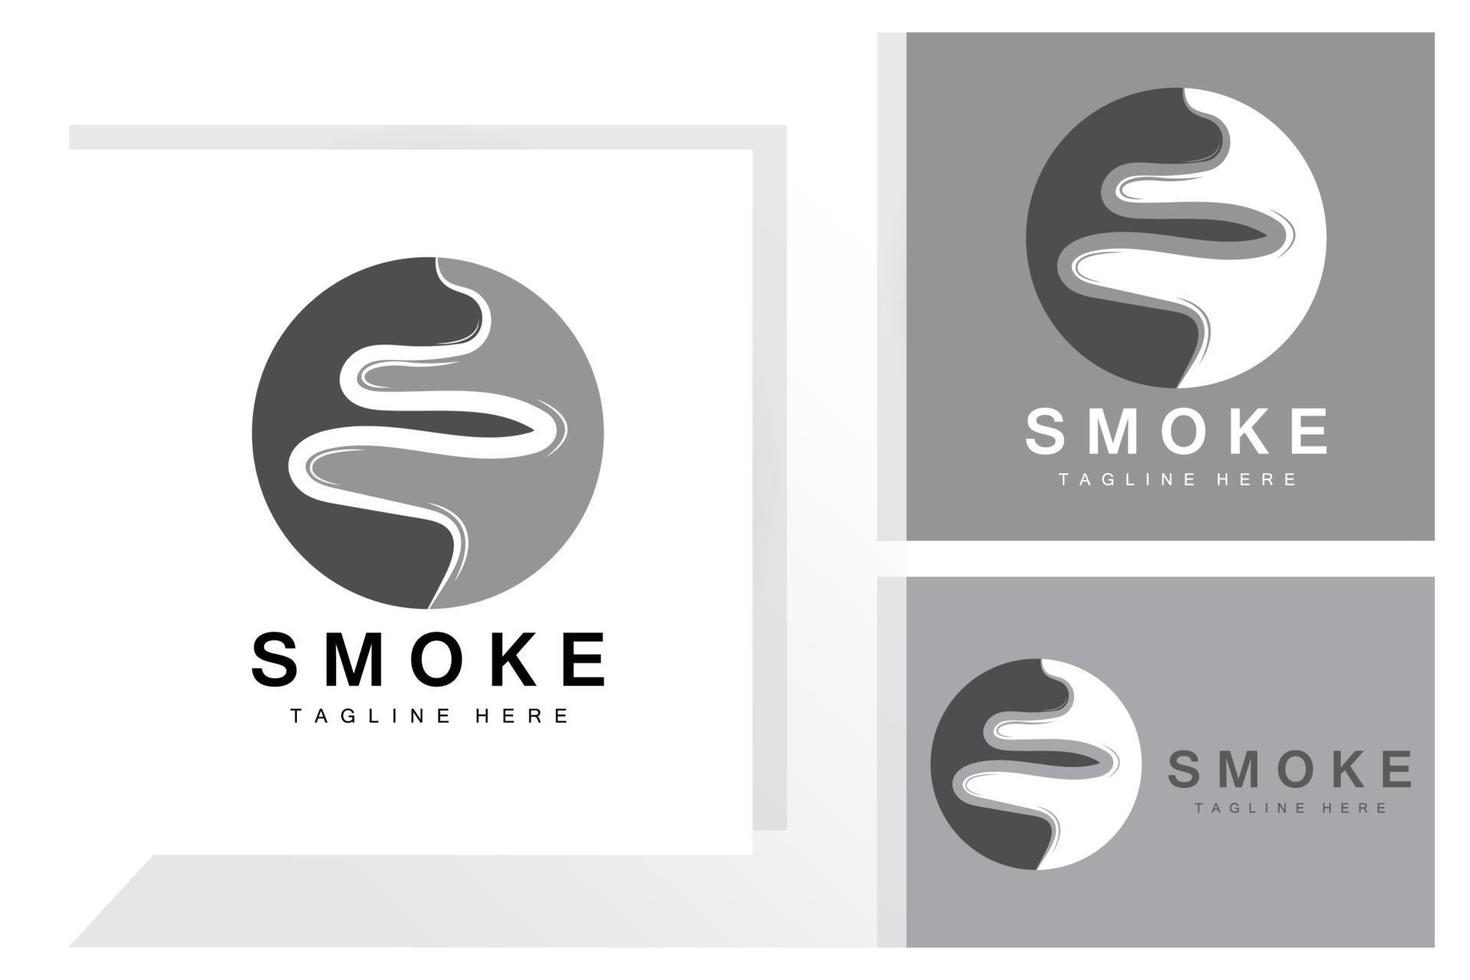 Dampf Dampf Logo Vektor heißes verdunstendes Aroma. geruchslinie illustration, kochendes dampfsymbol, dampfzug, backen, rauchen